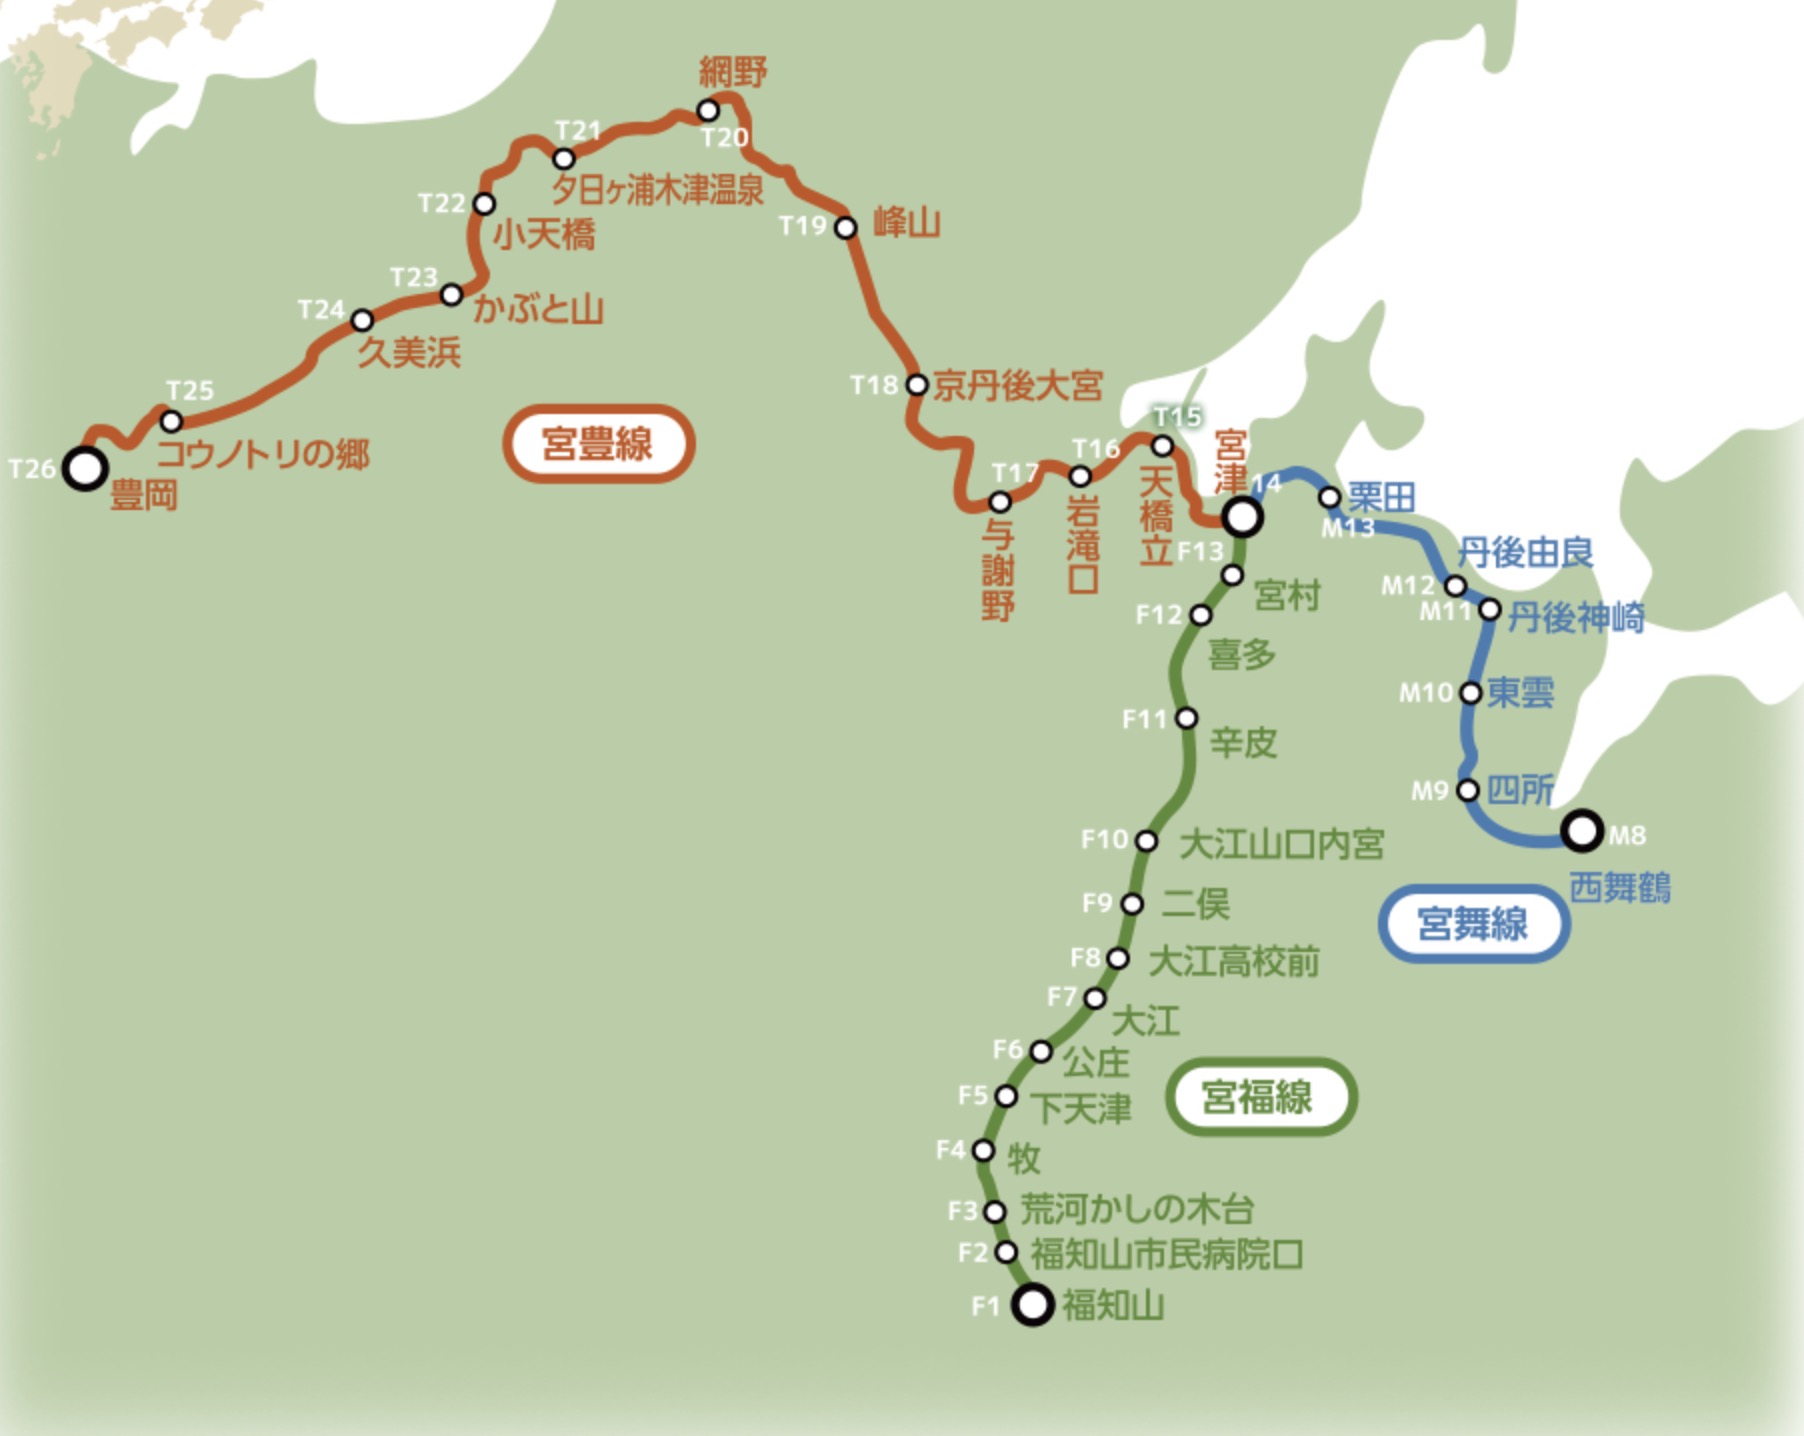 天橋立JR鐵路交通方式整理|大阪京都搭乘JR鐵路到天橋立交通 @來一球叭噗